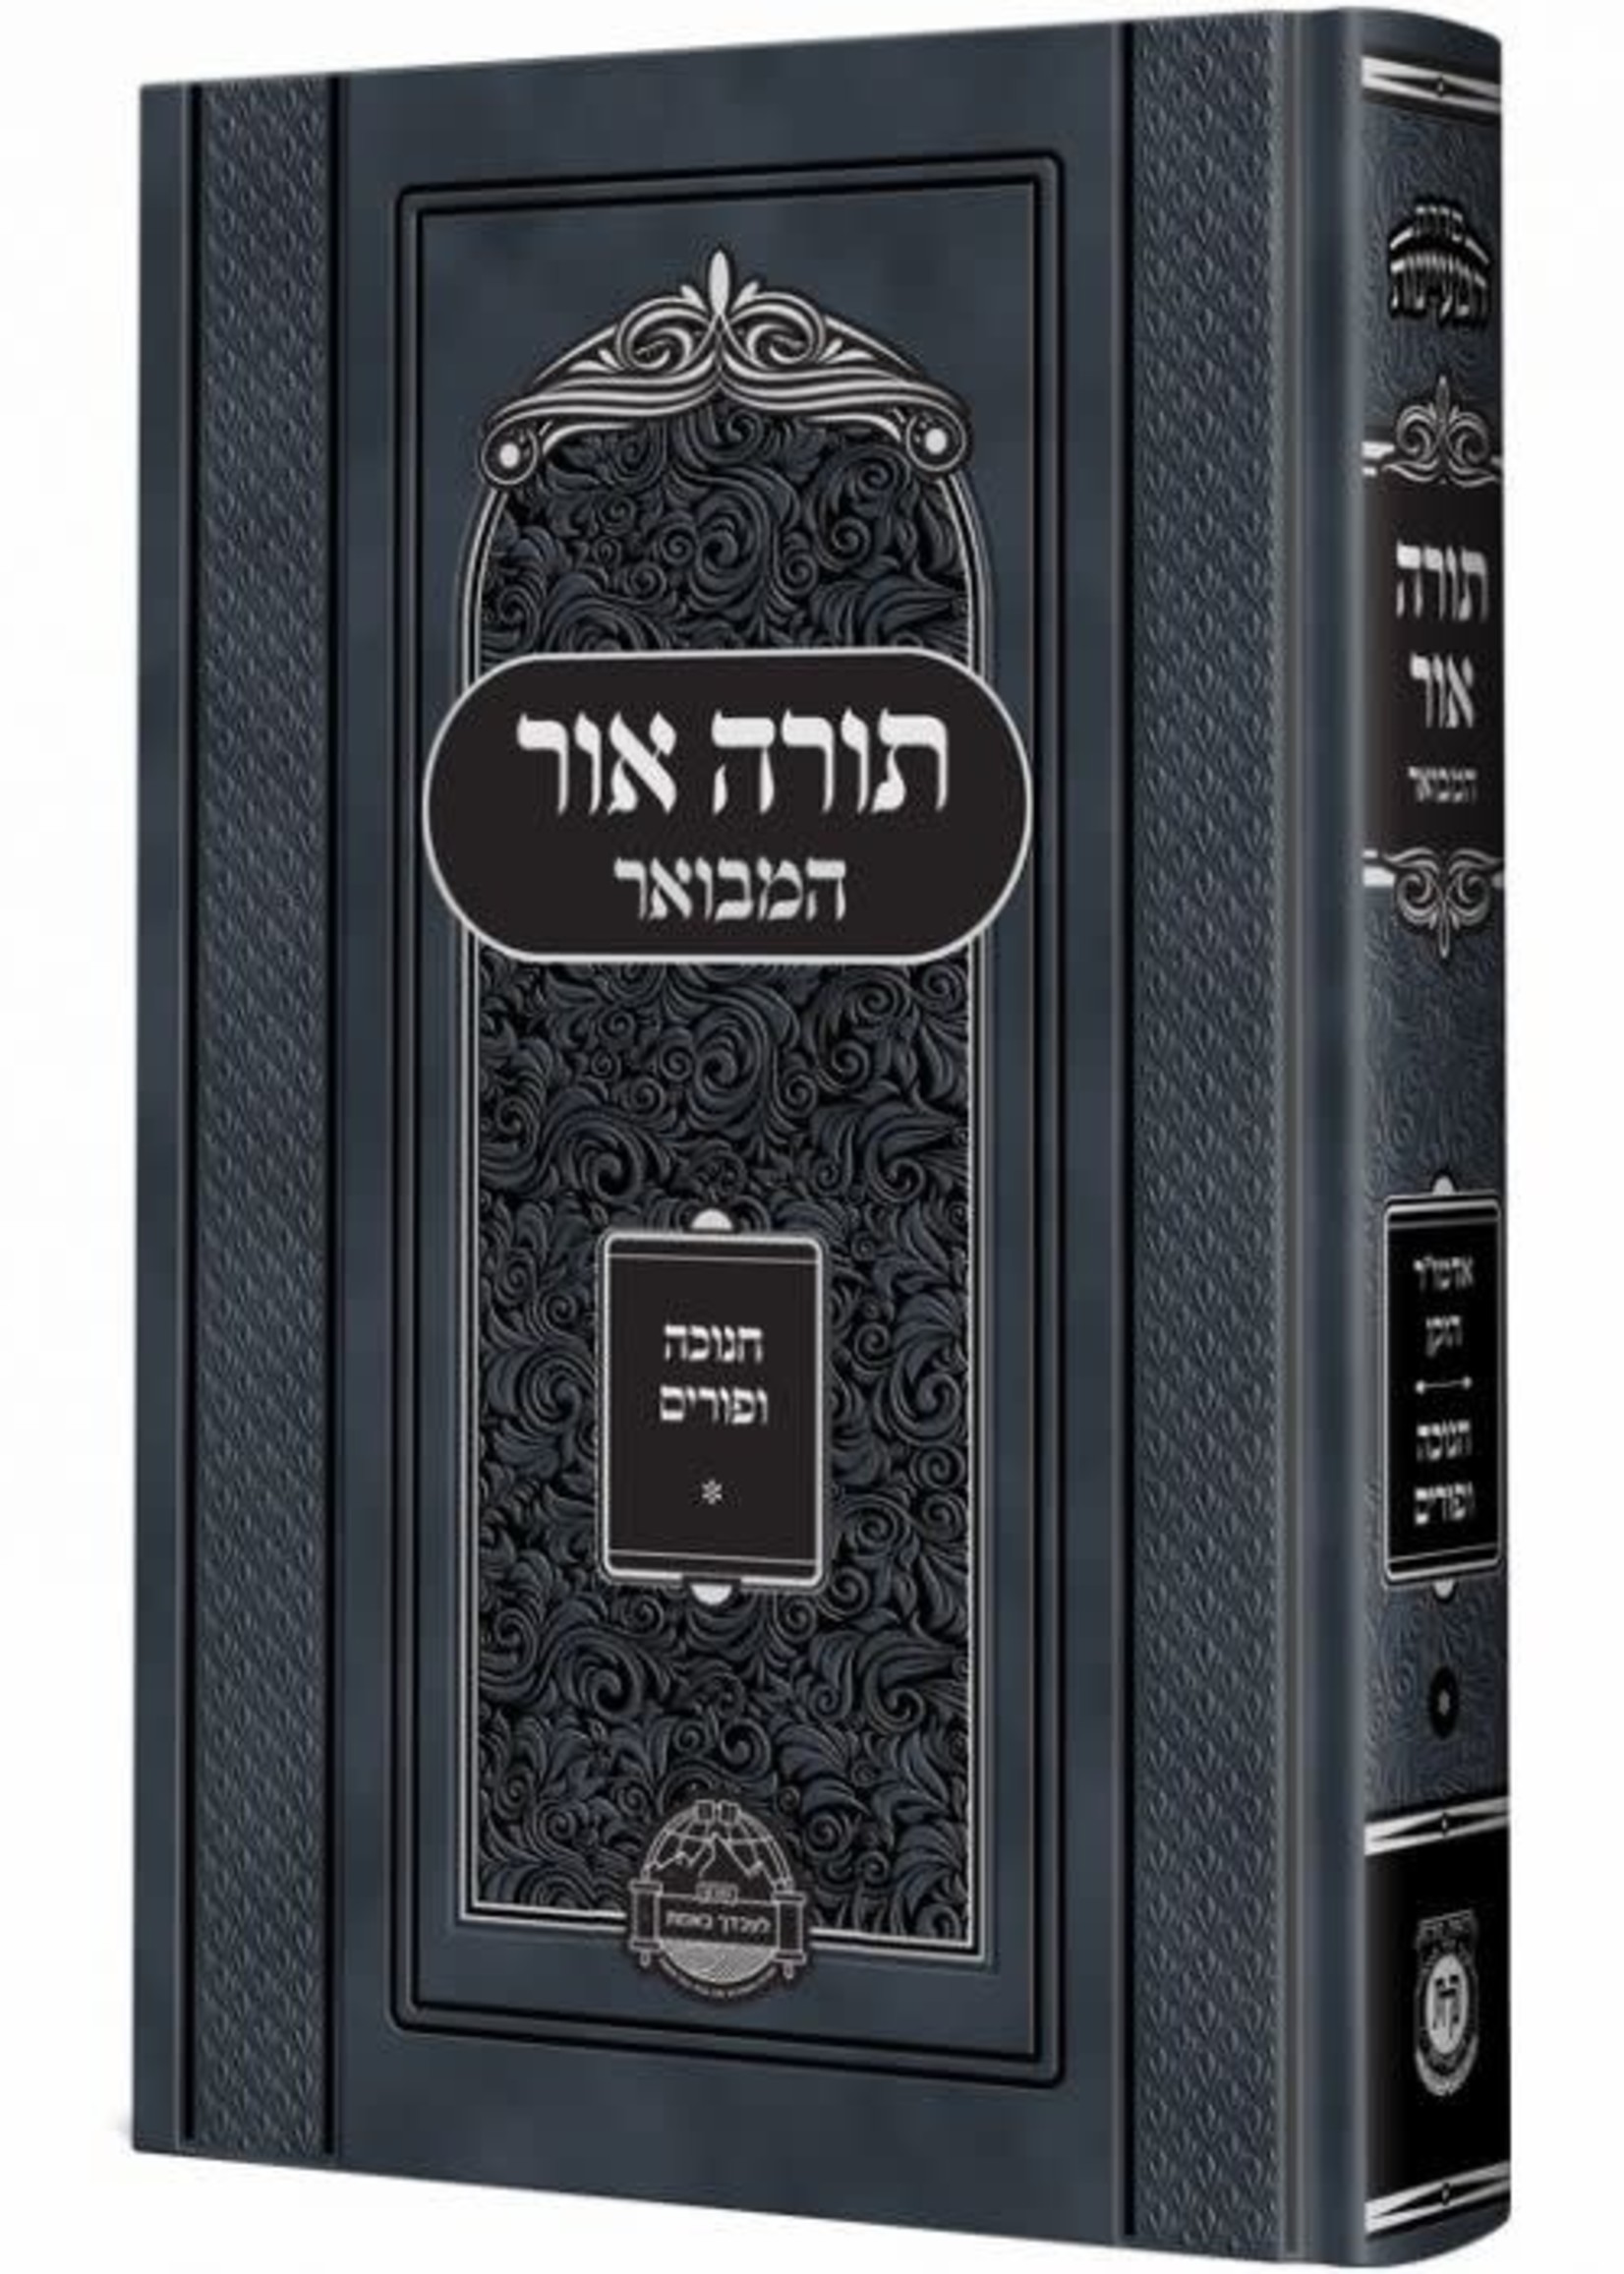 תורה אור המבואר - חנוכה פורים  Torah Ohr Hamevoar - Chanukah - Purim